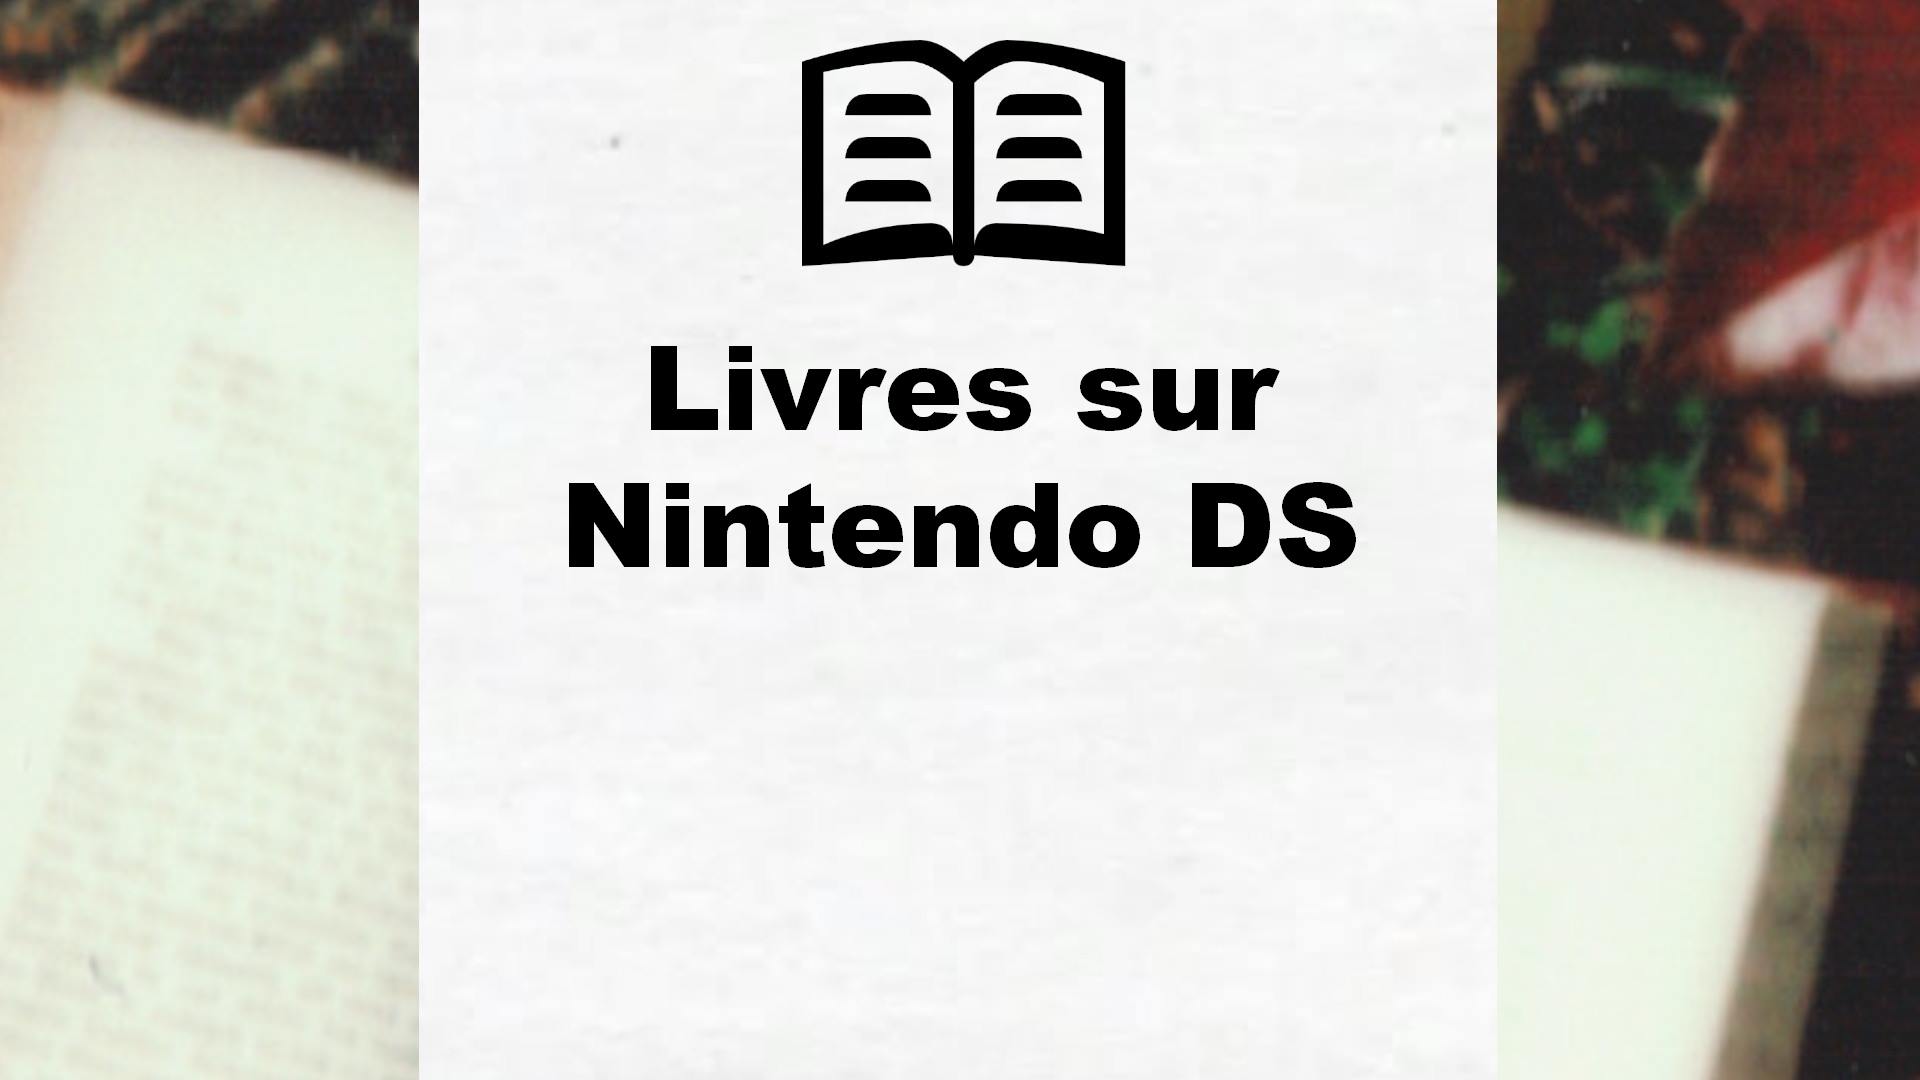 Livres sur Nintendo DS